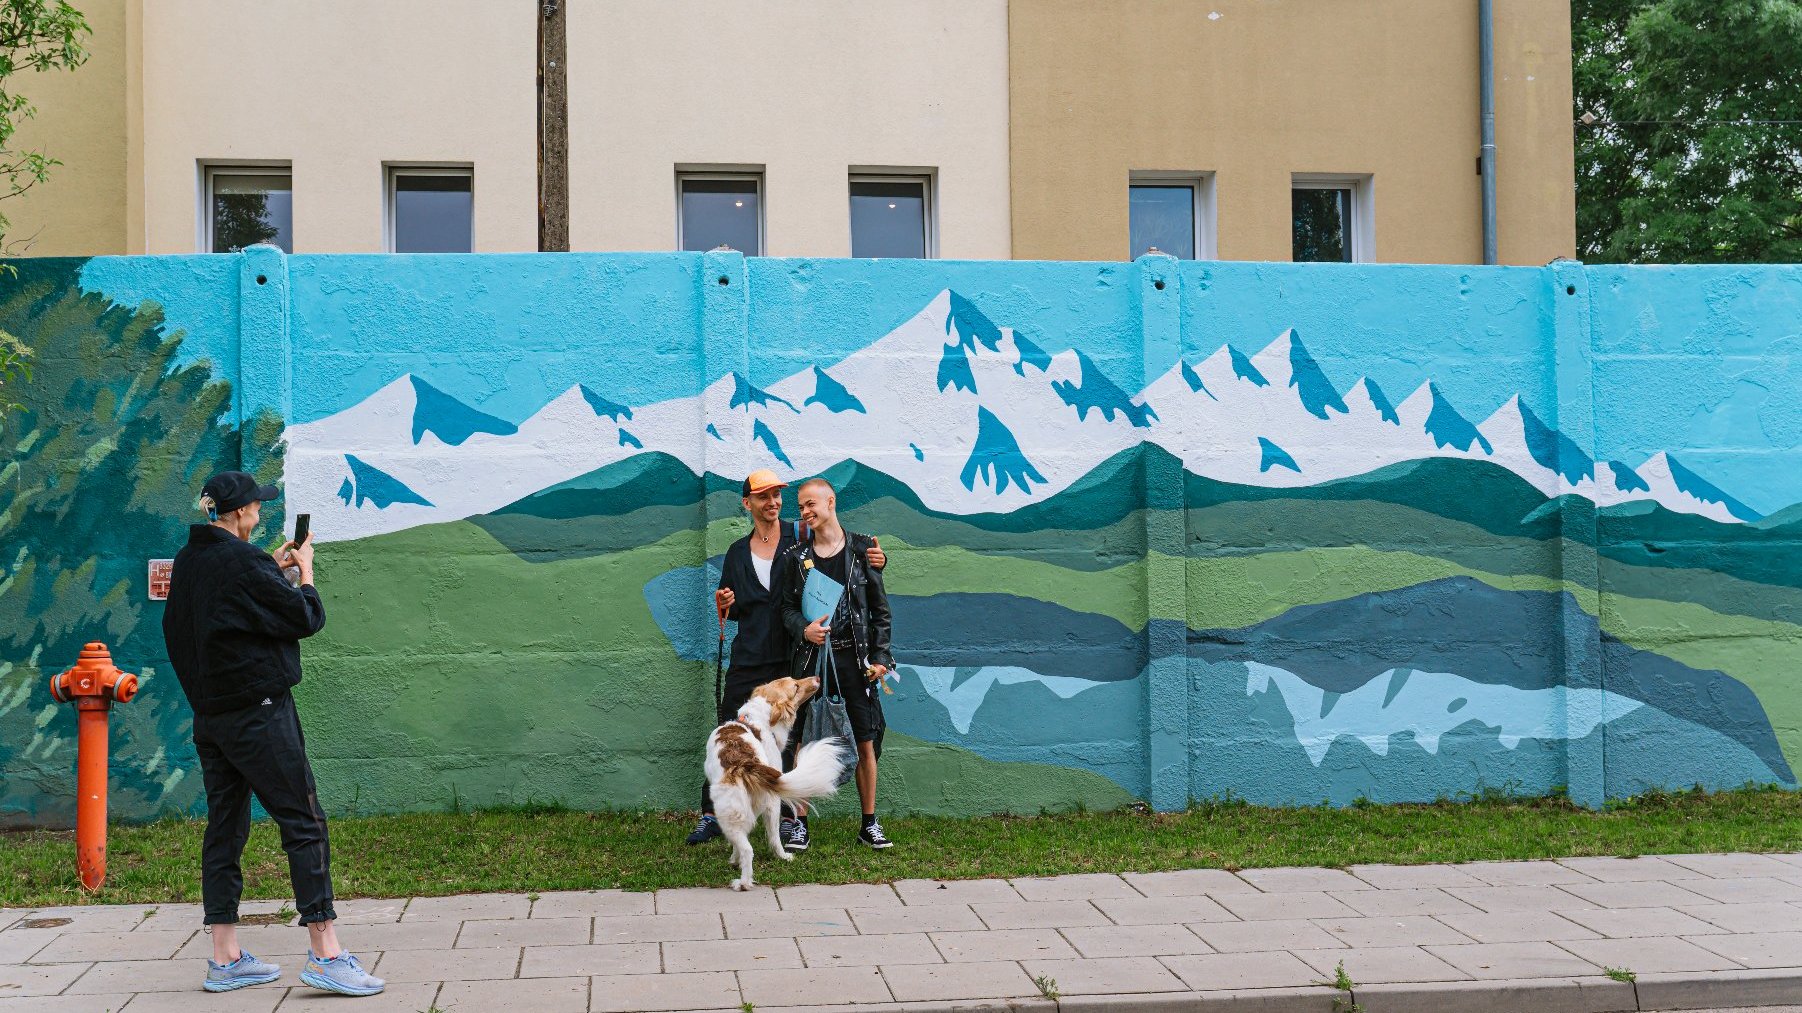 Na zdjęciu mural, przed nim ktoś robi zdjęcie dwóm osobom i psu